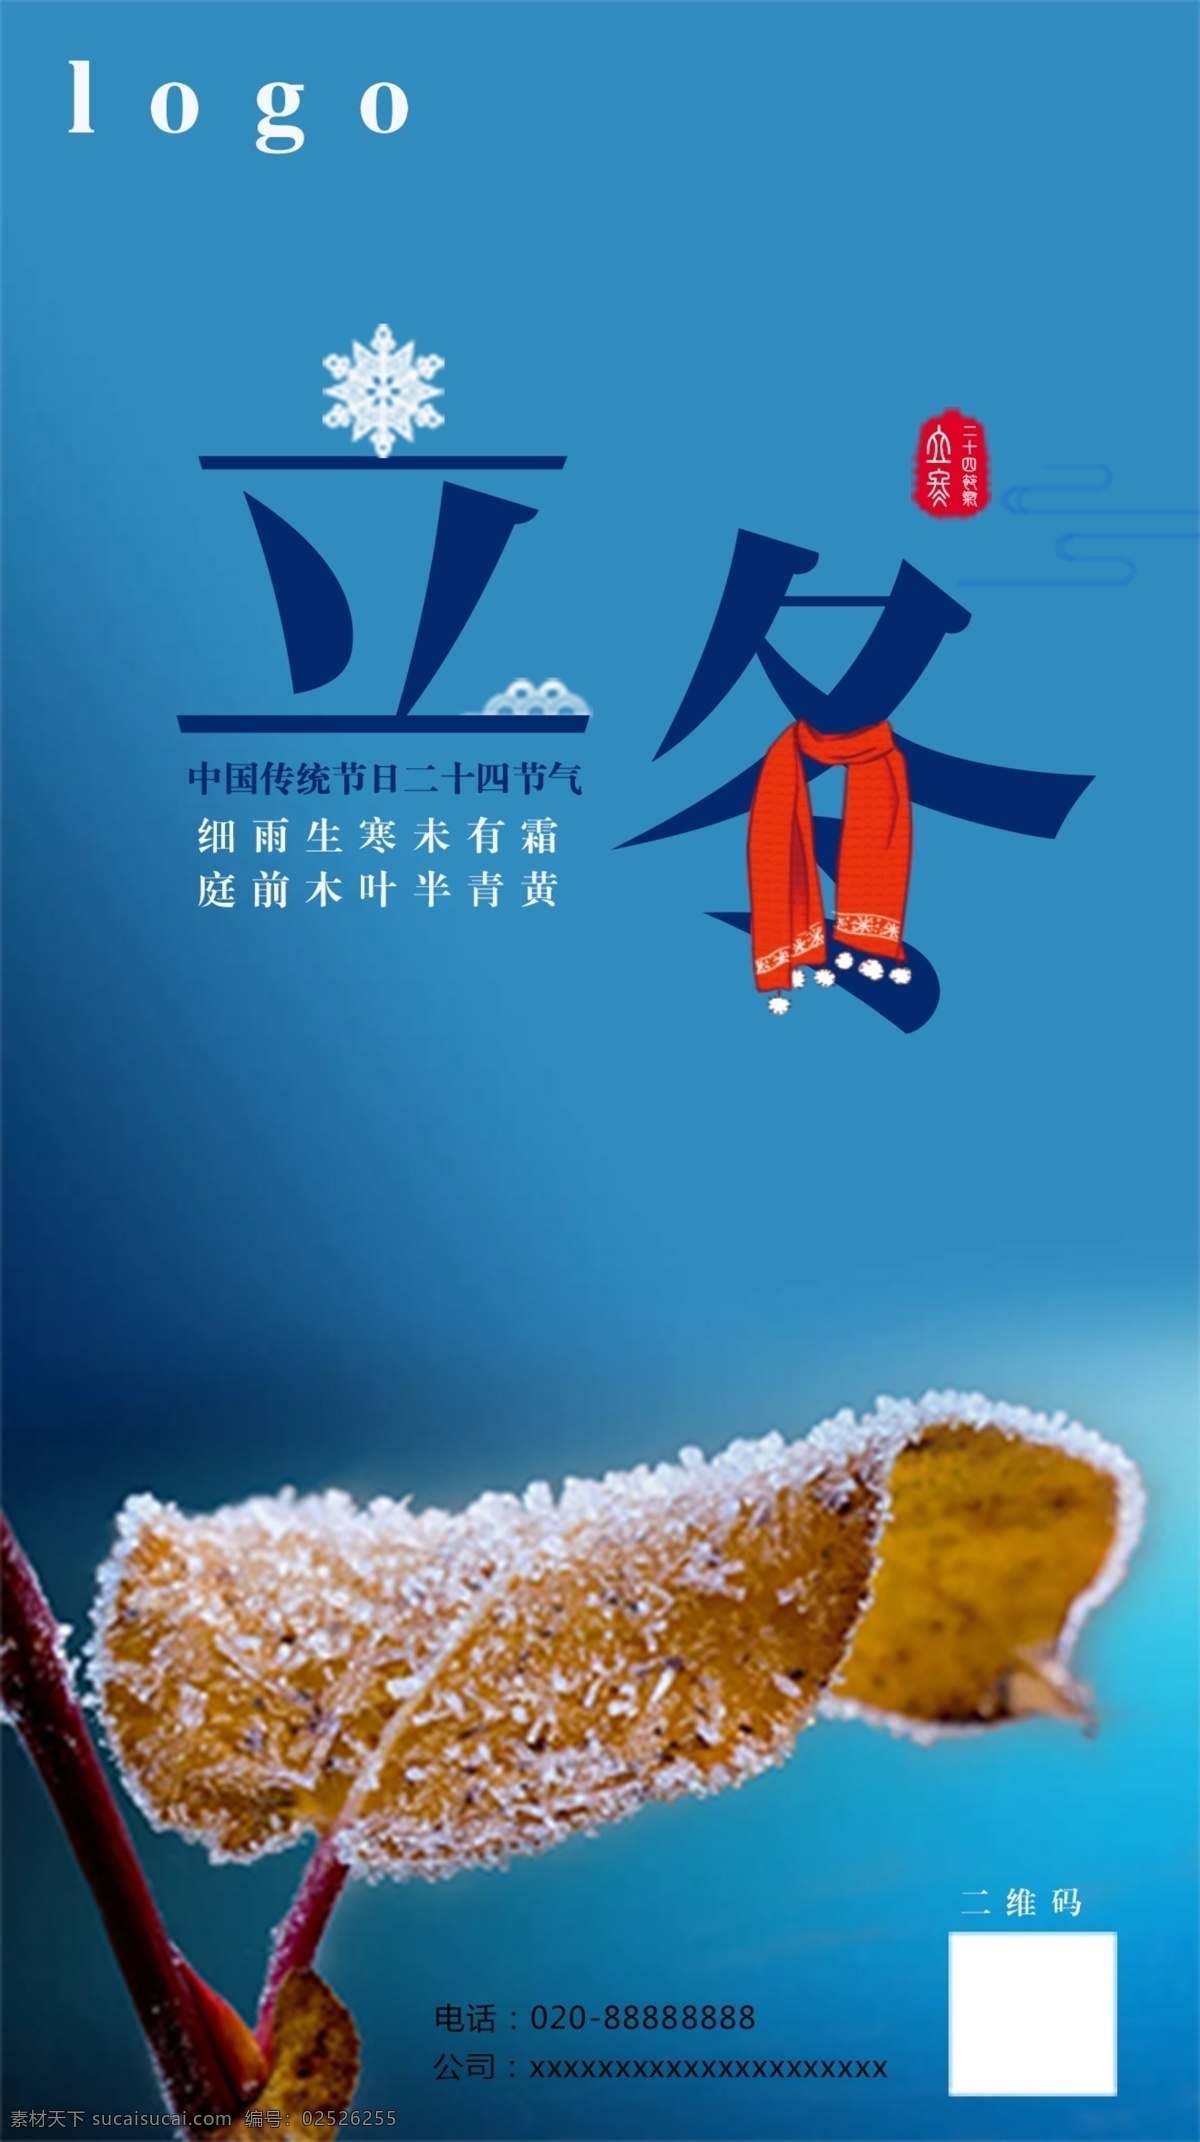 二十四节气 立冬 海报 传统 节日海报 创意 寒冬